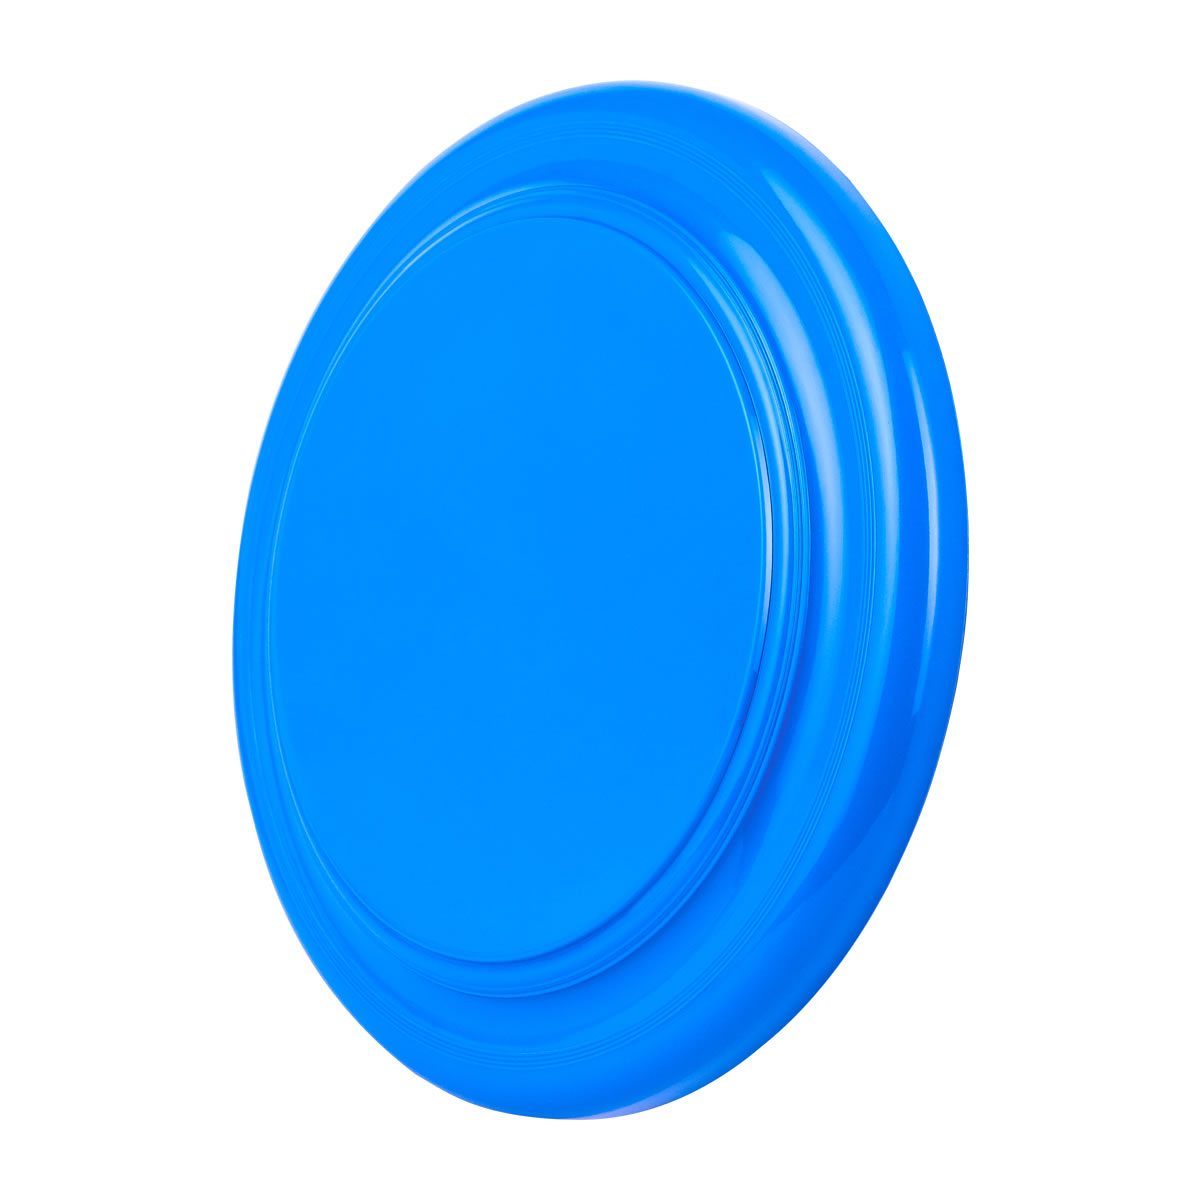 CC124 - Frisbee Contour de Plástico 23 cm.